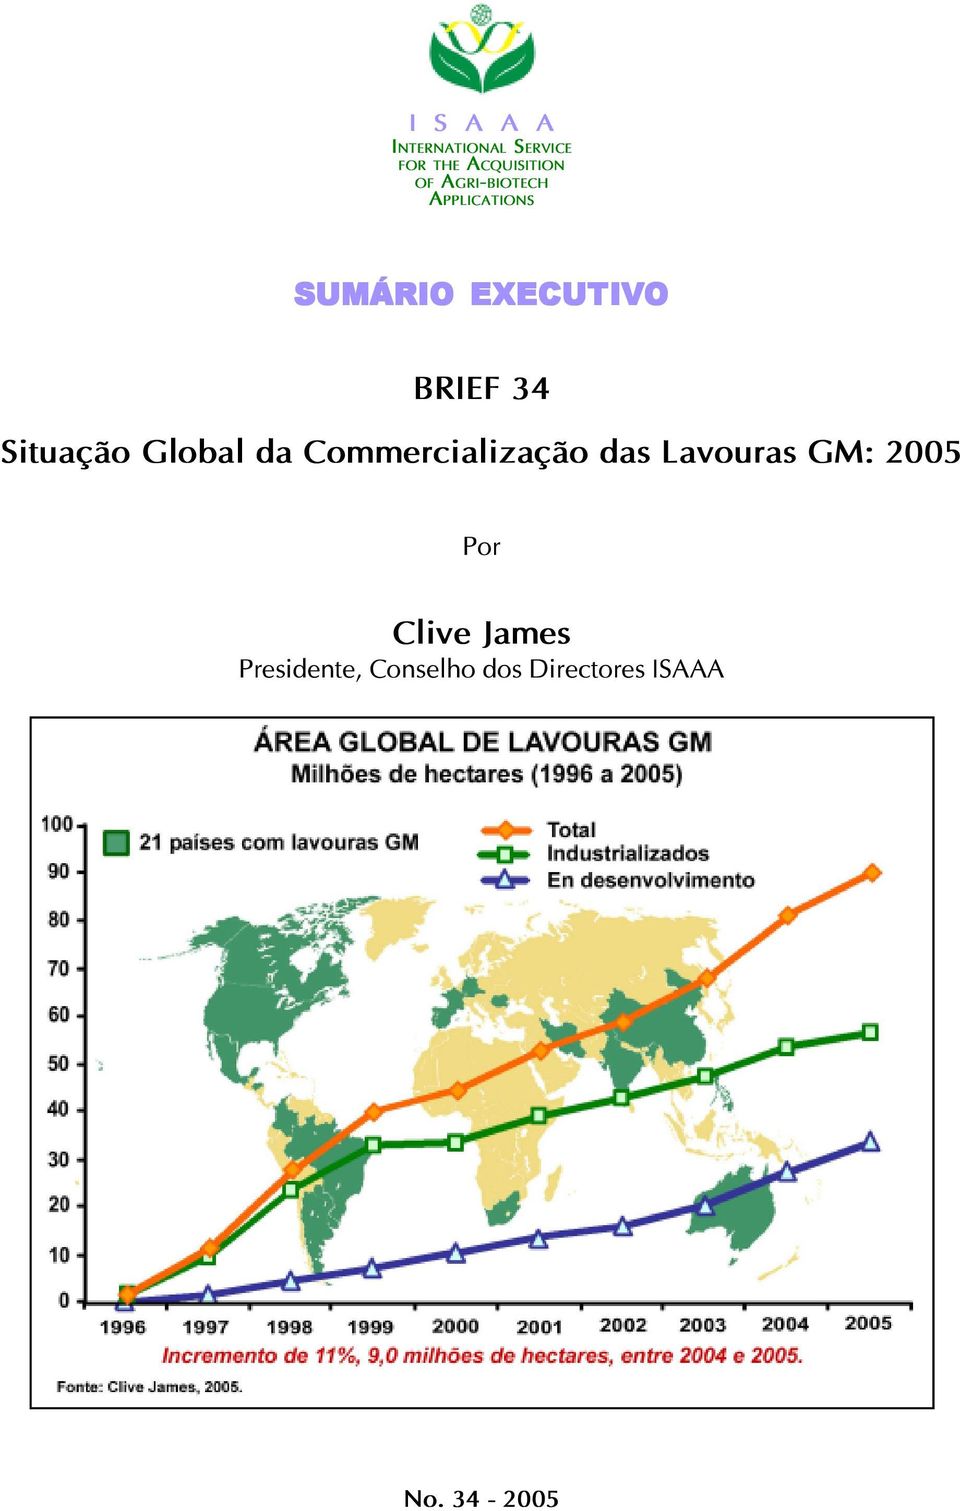 Situação Global da Commercialização das Lavouras GM: 2005